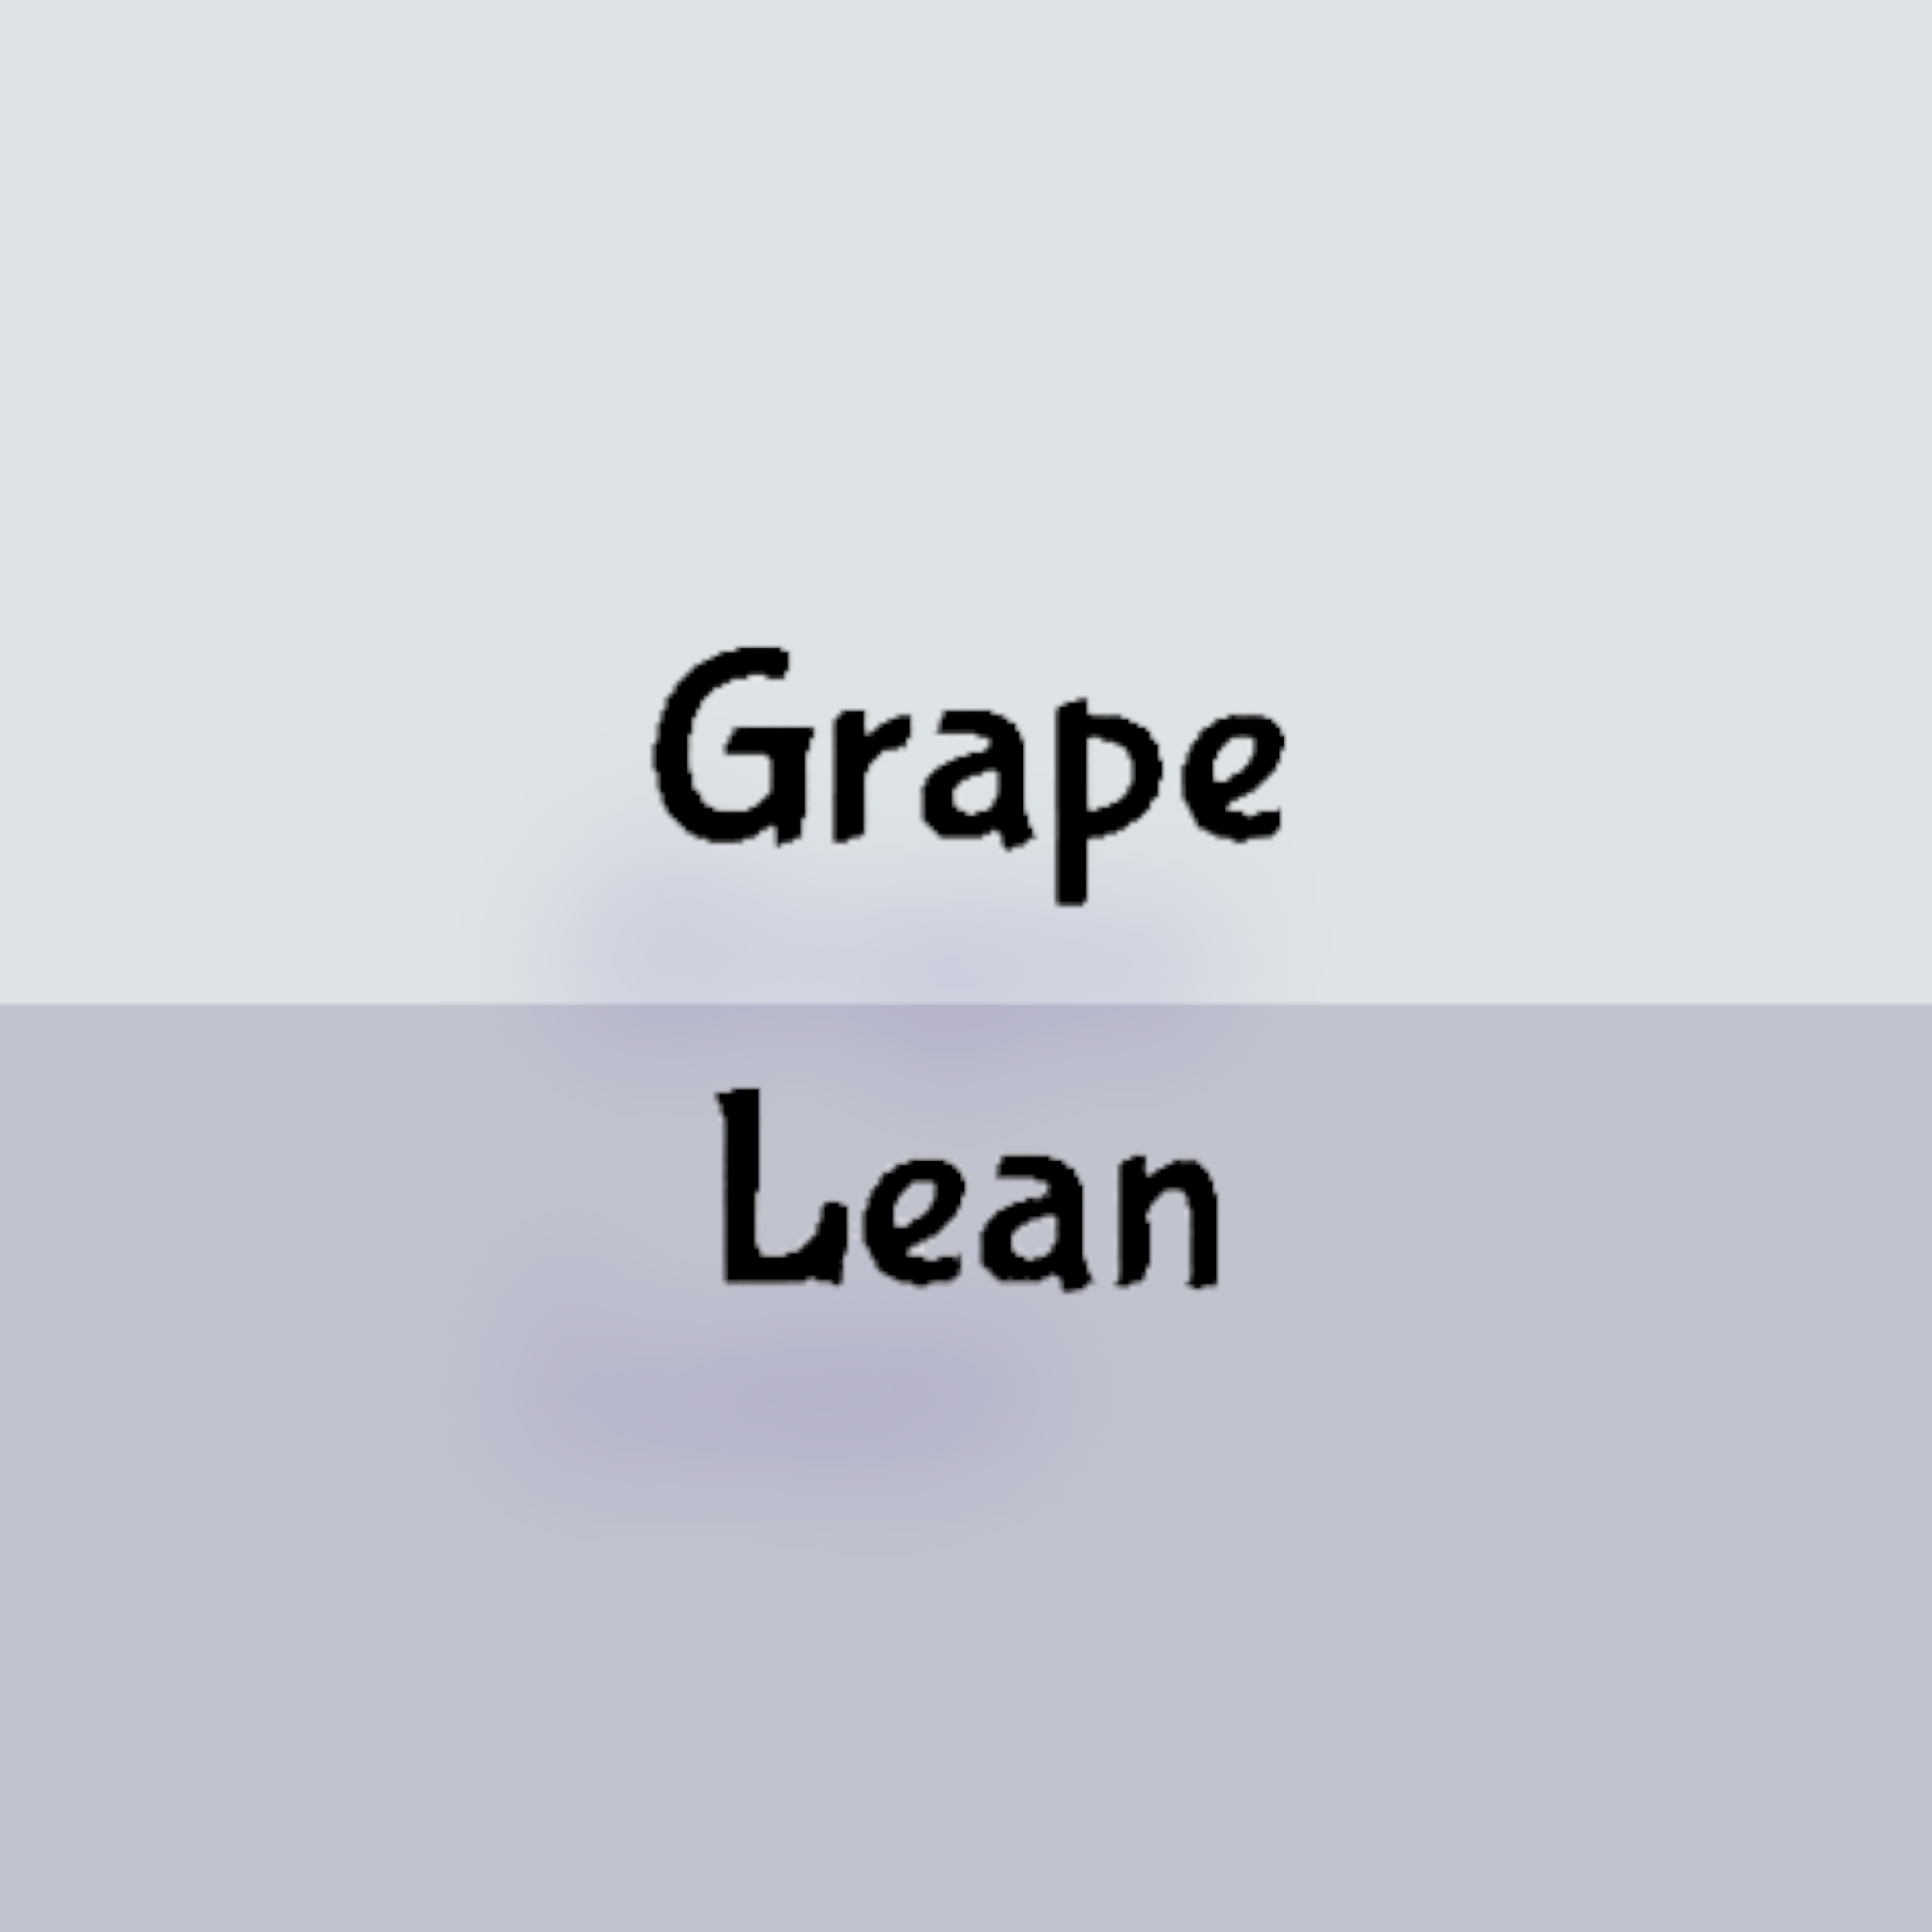 Grape Lean